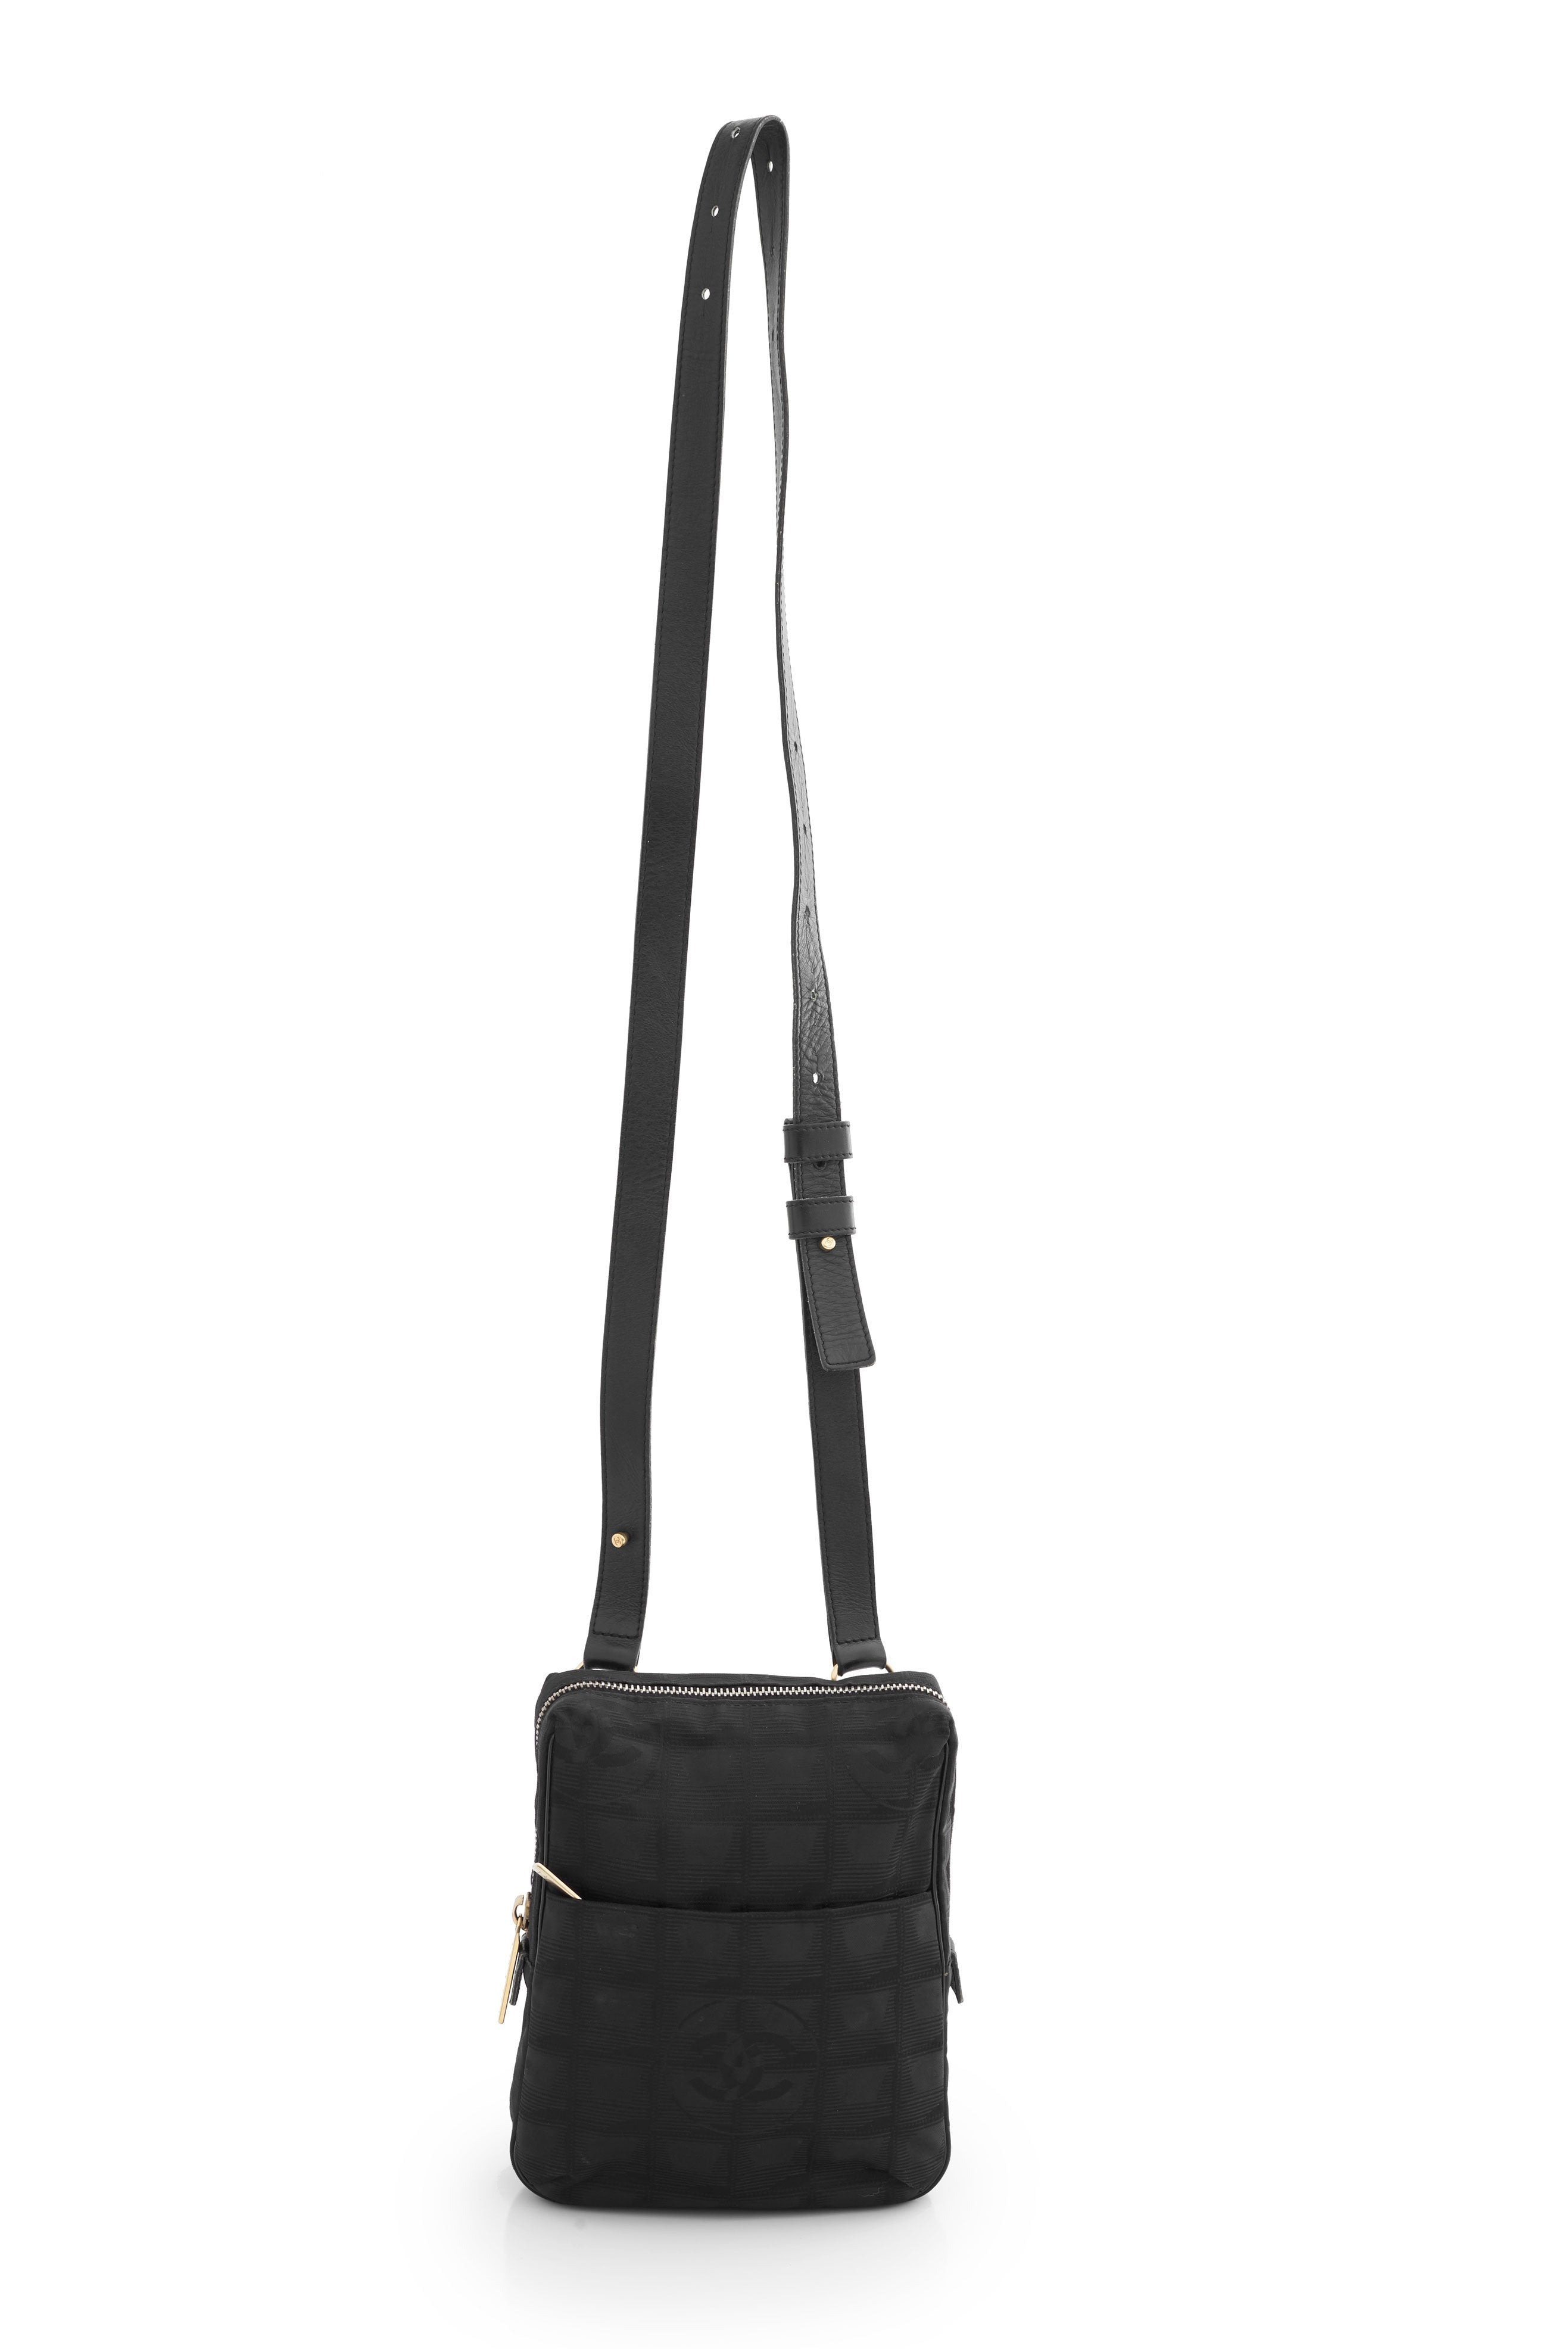 Chanel Convertible Crossbody Waist Bag